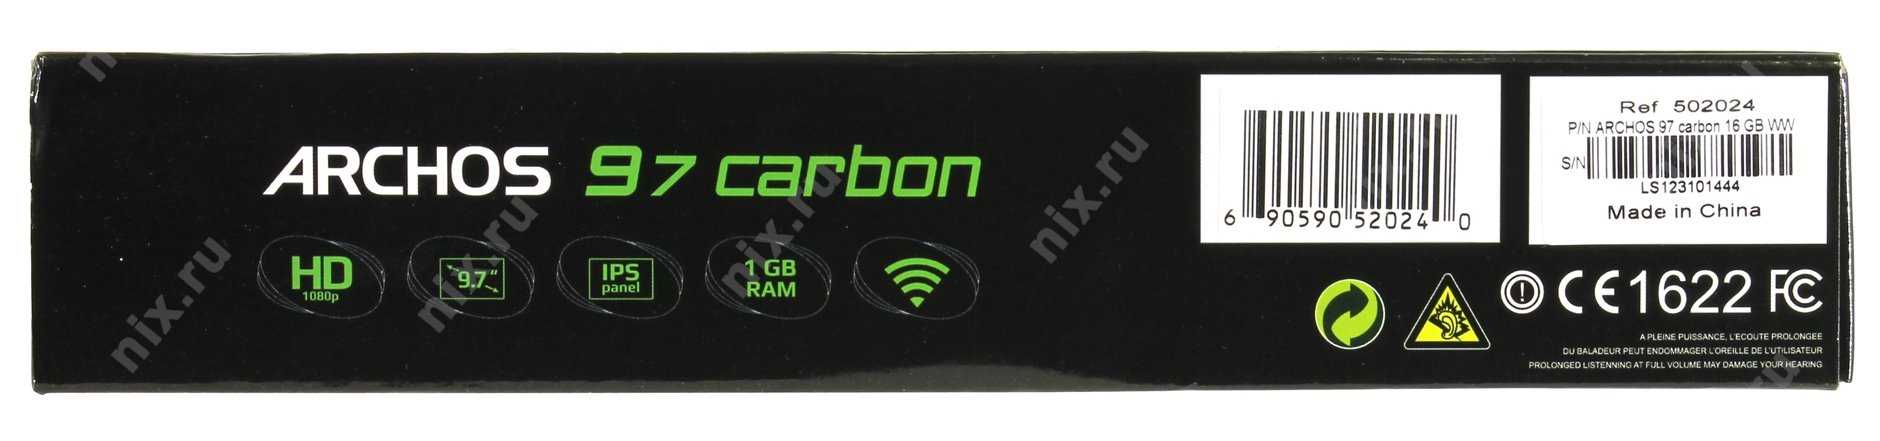 Archos 97 carbon 16gb - купить  в тверь, скидки, цена, отзывы, обзор, характеристики - планшеты